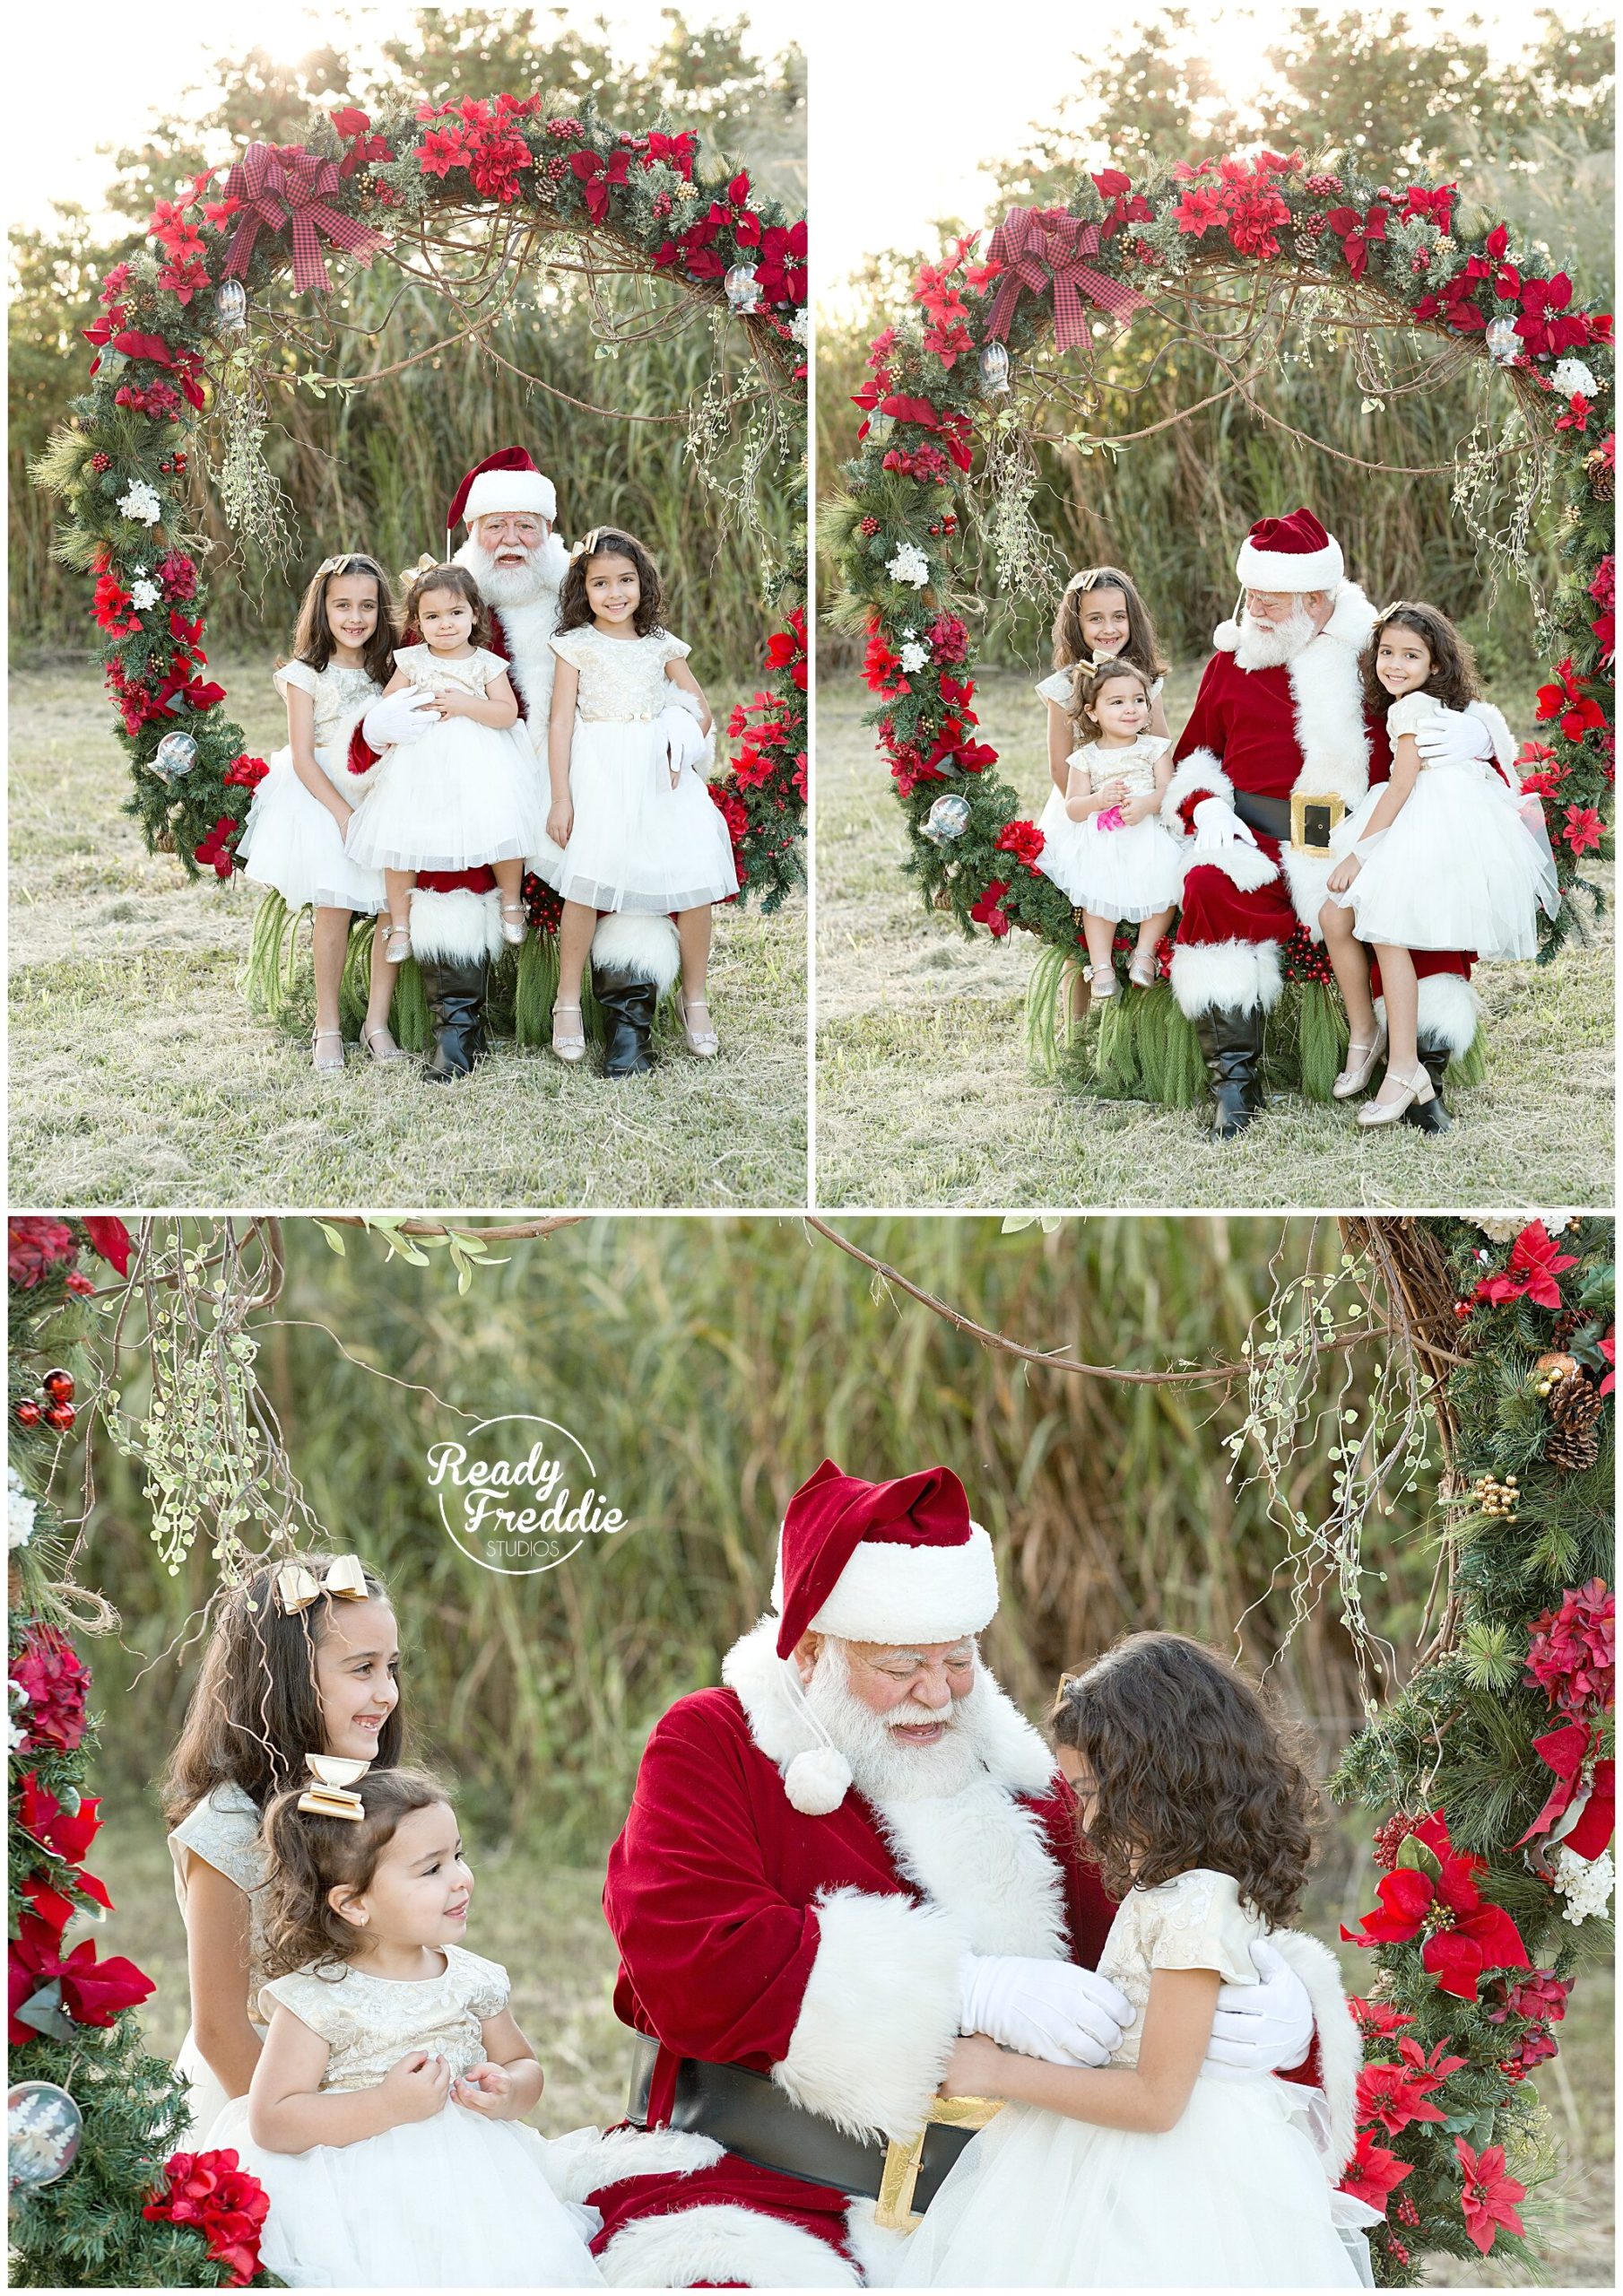 Fun pictures with Santa - Outdoor photos with giant wreath | Ready Freddie Studios Miami, FL